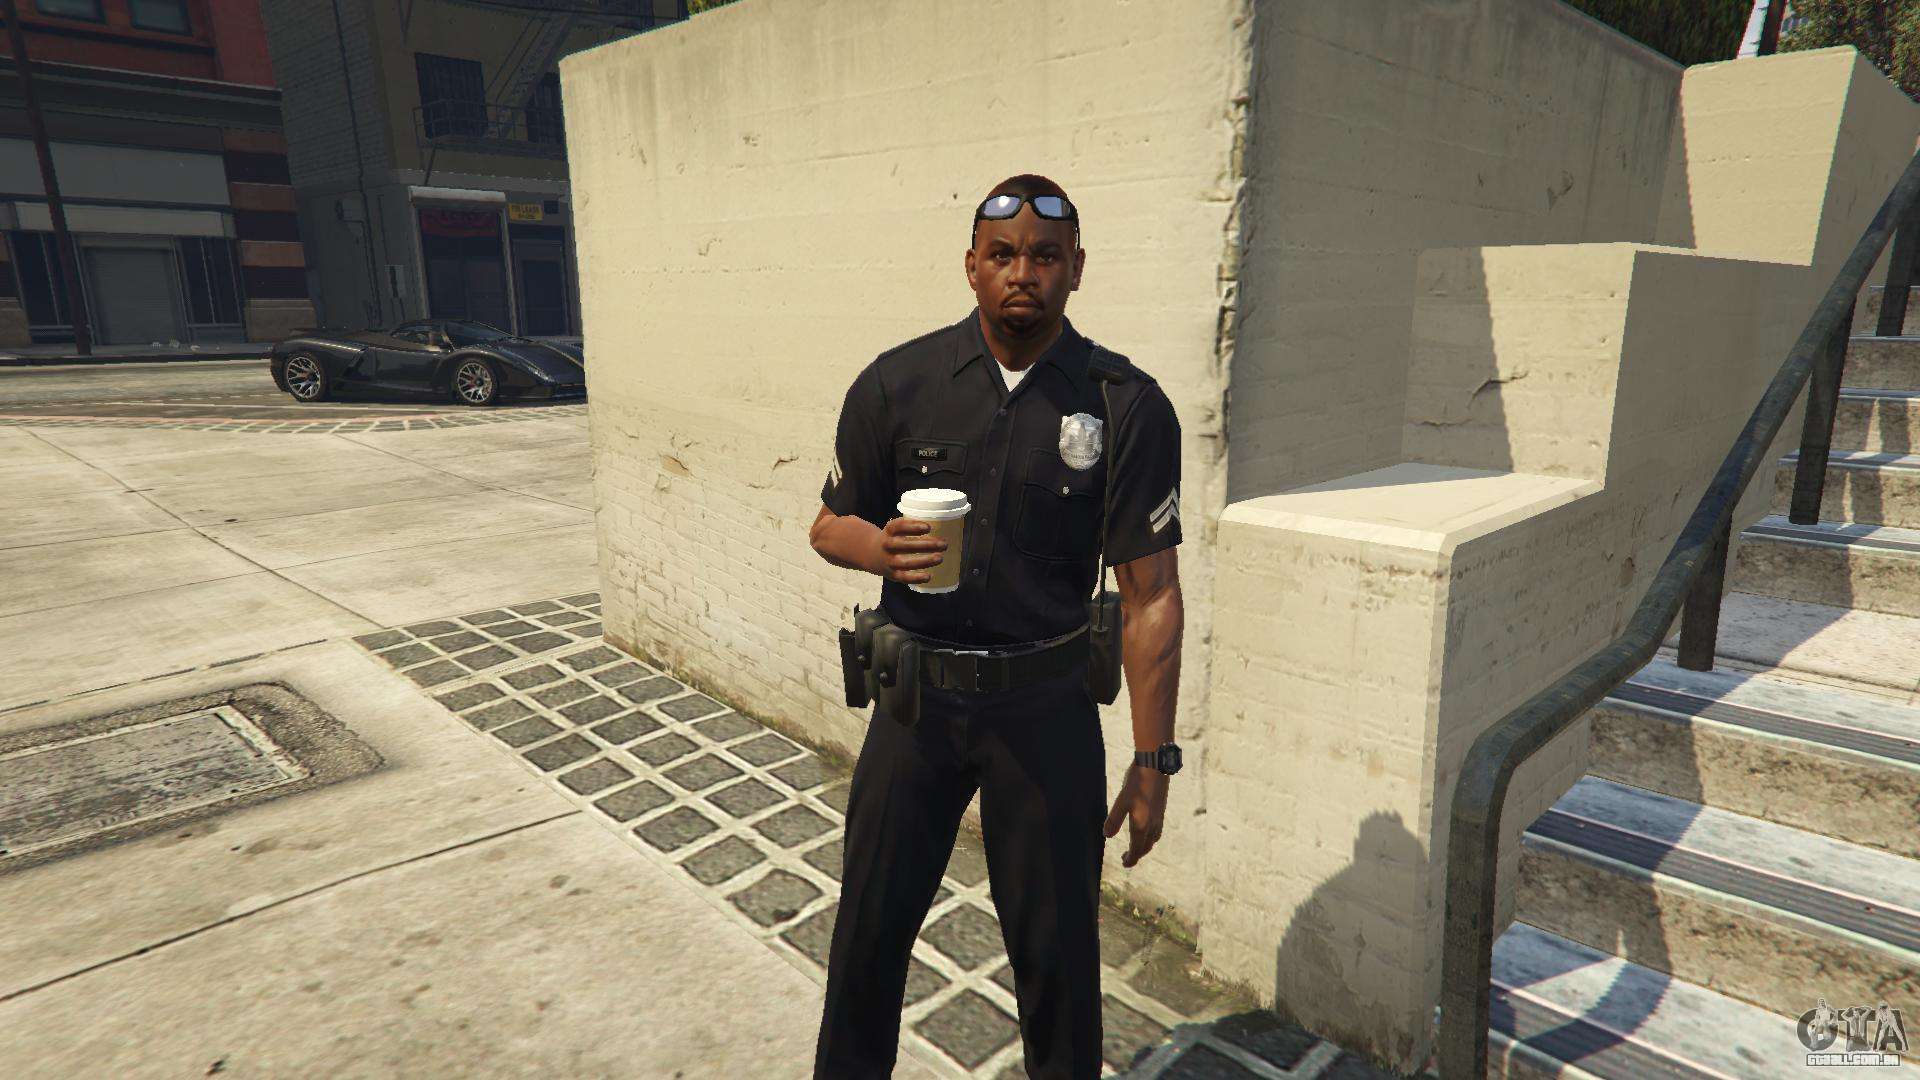 Como trabalhar de policial no GTA 5